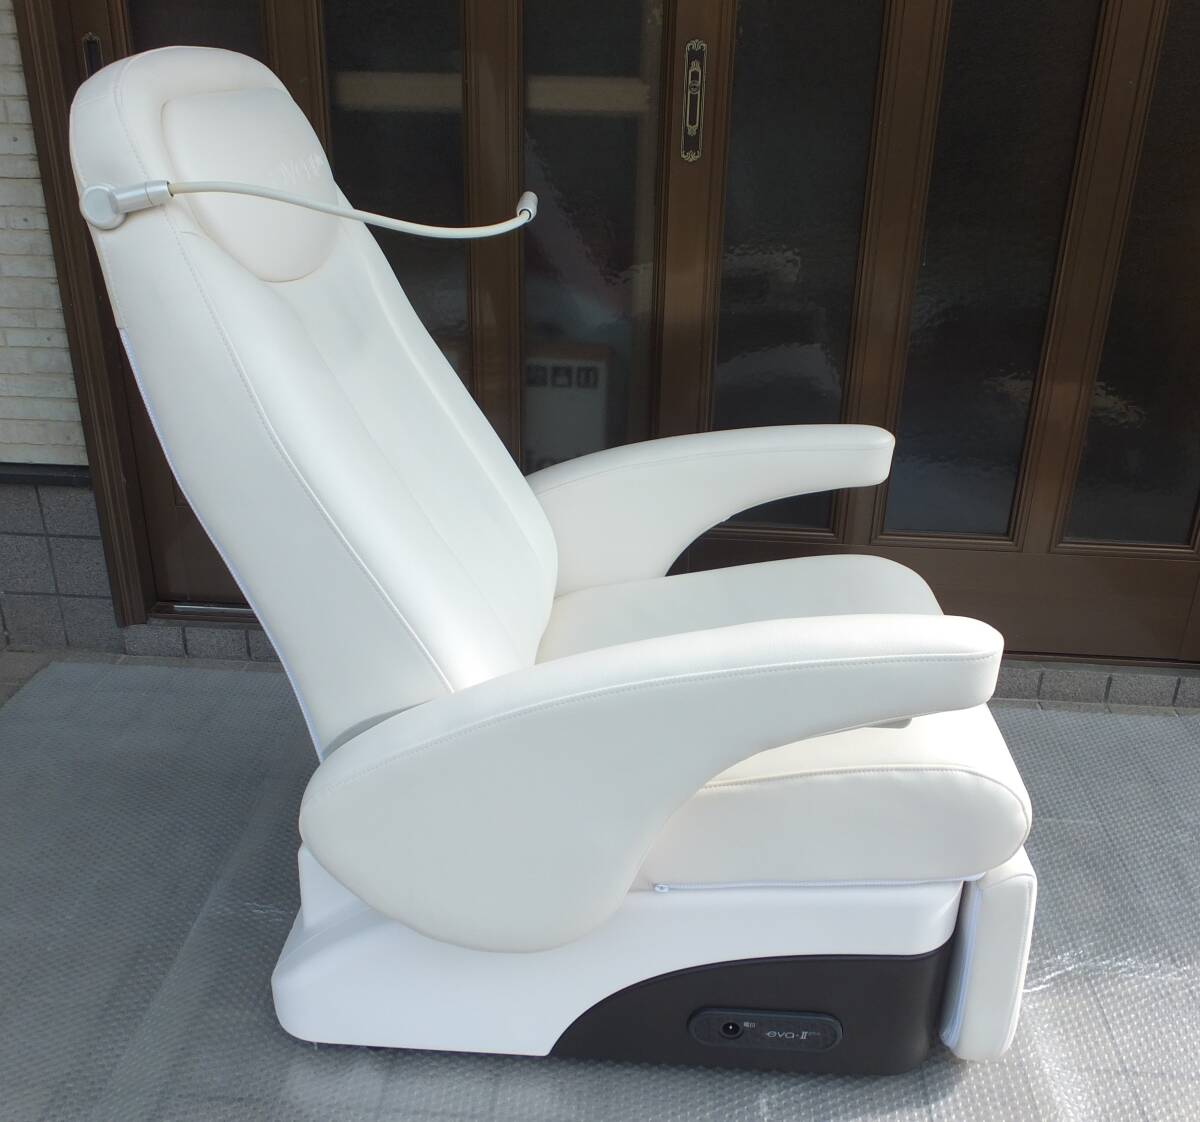 O2チェアプラス 酸素椅子 コスモヘルス プレセンス t-cure14000、REVO14000 に使用していた酸素椅子の画像2